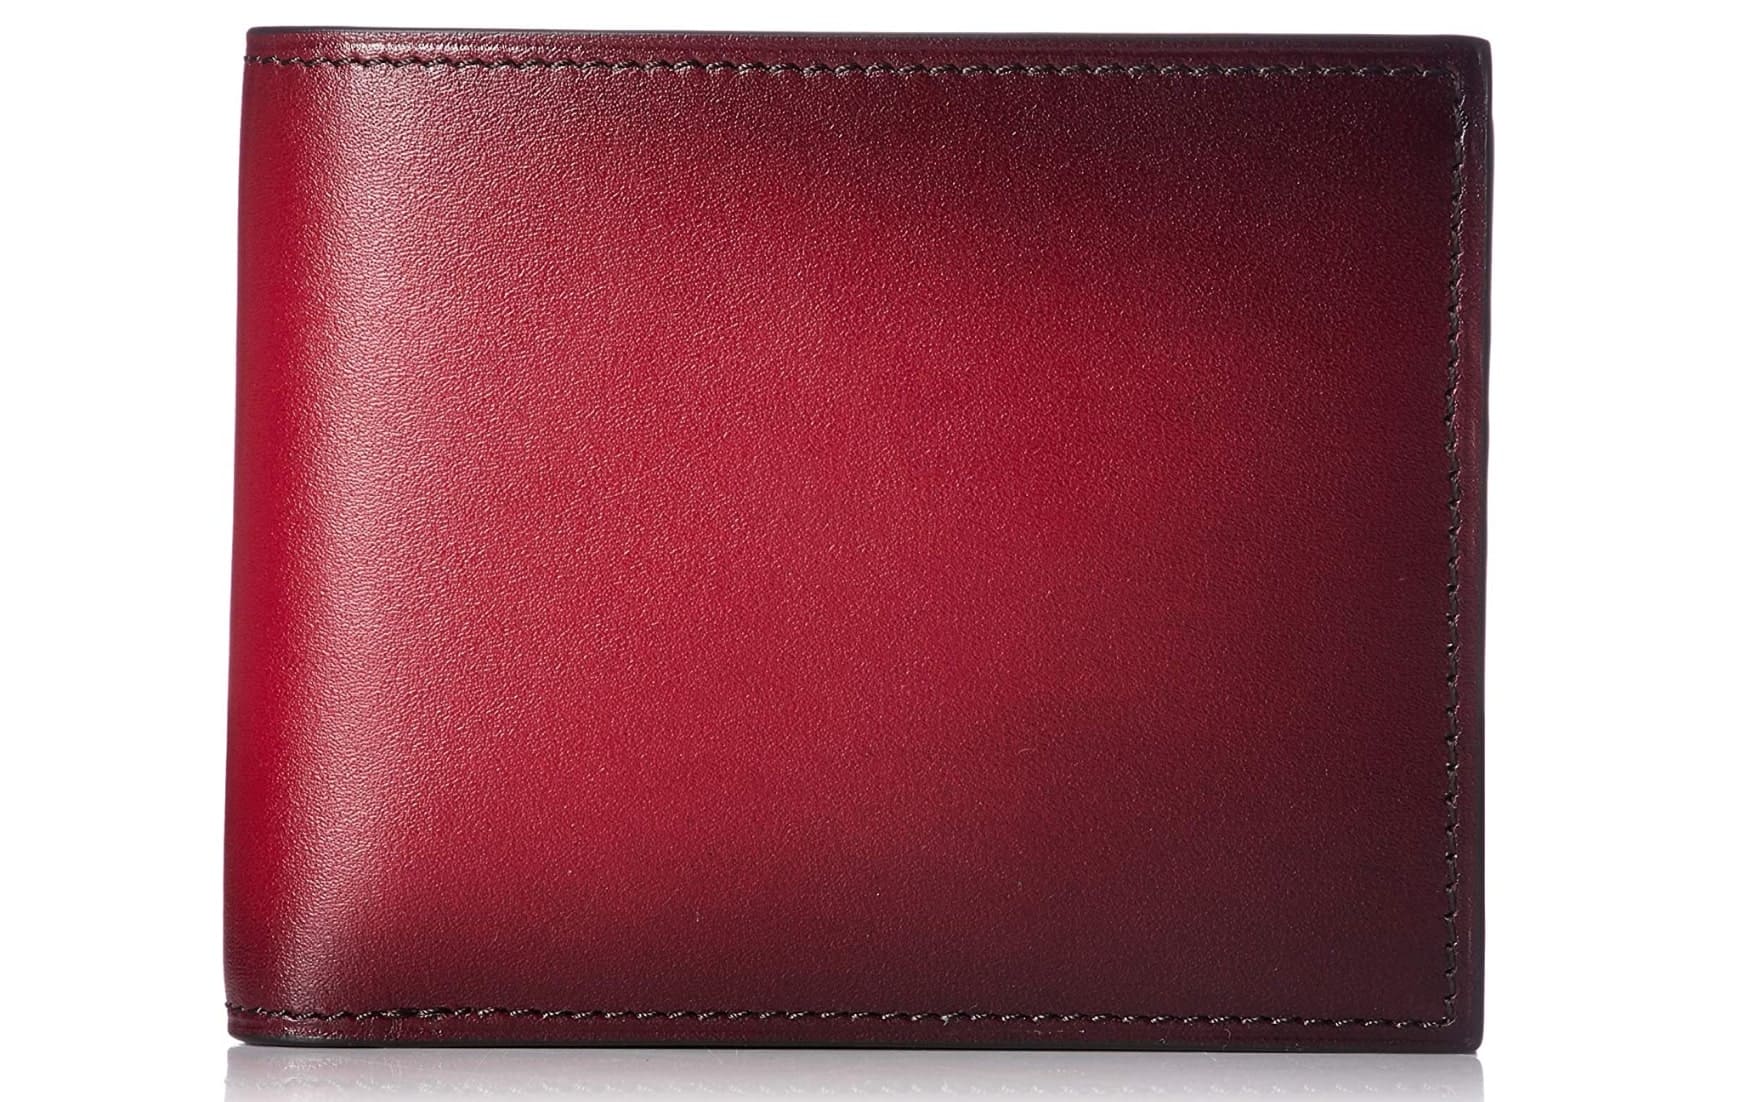 ユハクの世界一の手染めによる赤色二つ折り財布